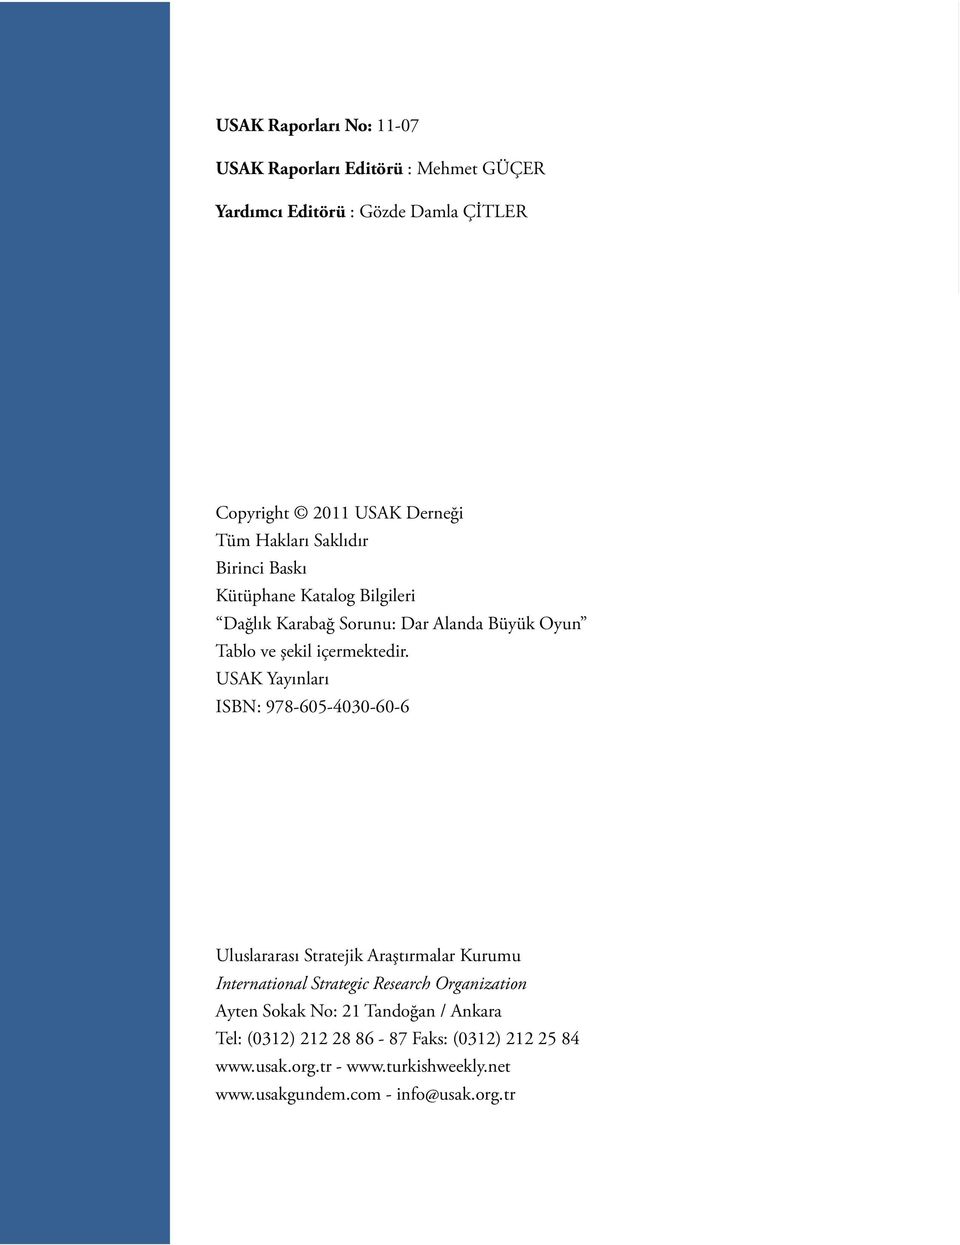 USAK Yayınları ISBN: 978-605-4030-60-6 Uluslararası Stratejik Araştırmalar Kurumu International Strategic Research Organization Ayten